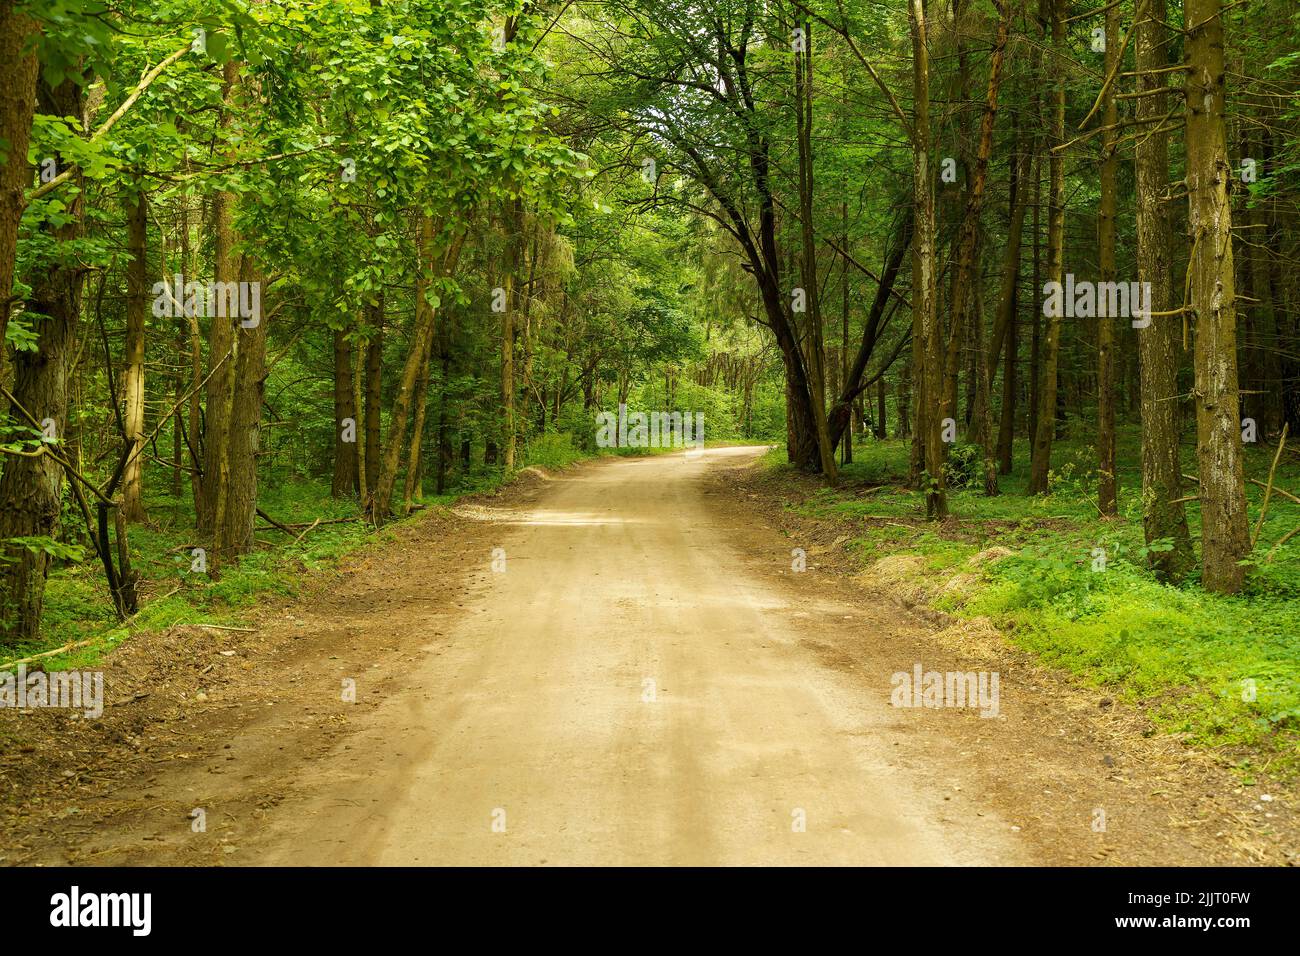 Camino de tierra en el bosque. Camino en el bosque verde de verano. Concepto de viaje, naturaleza, aventura. Fotografía de alta calidad Foto de stock